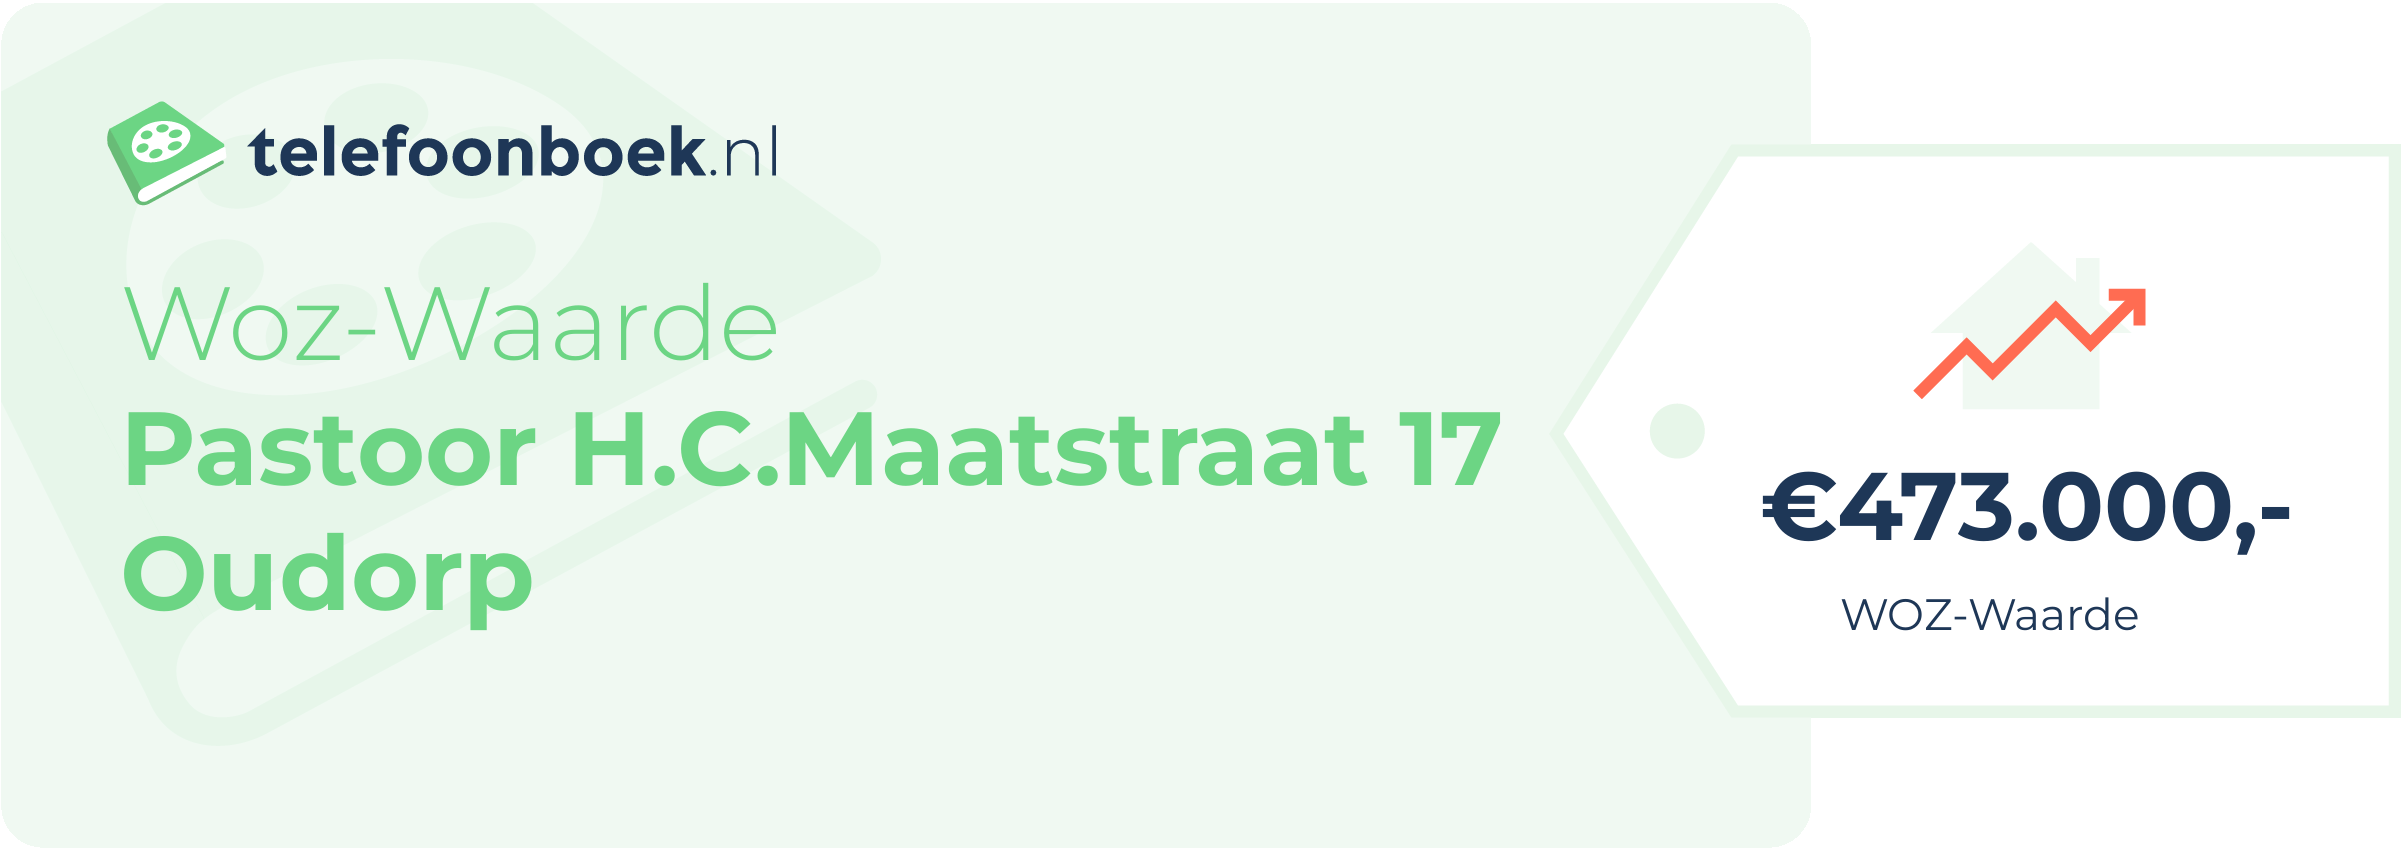 WOZ-waarde Pastoor H.C.Maatstraat 17 Oudorp